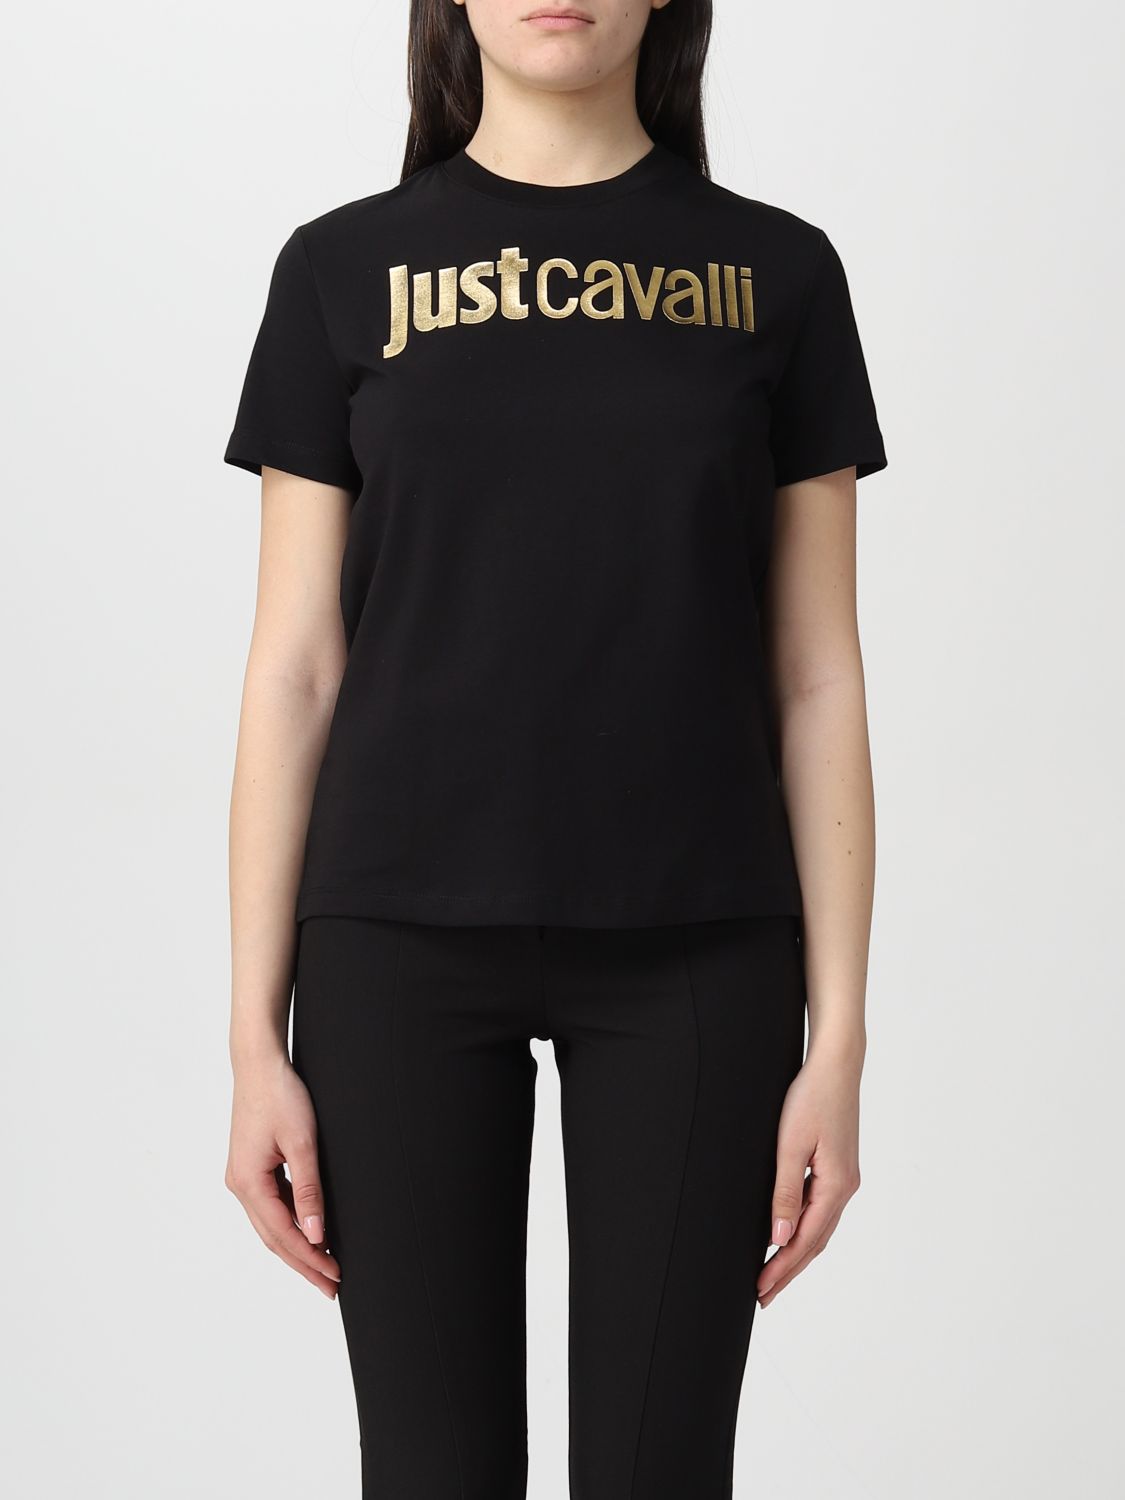 JUST CAVALLI: t-shirt for woman - Black | Just Cavalli t-shirt ...